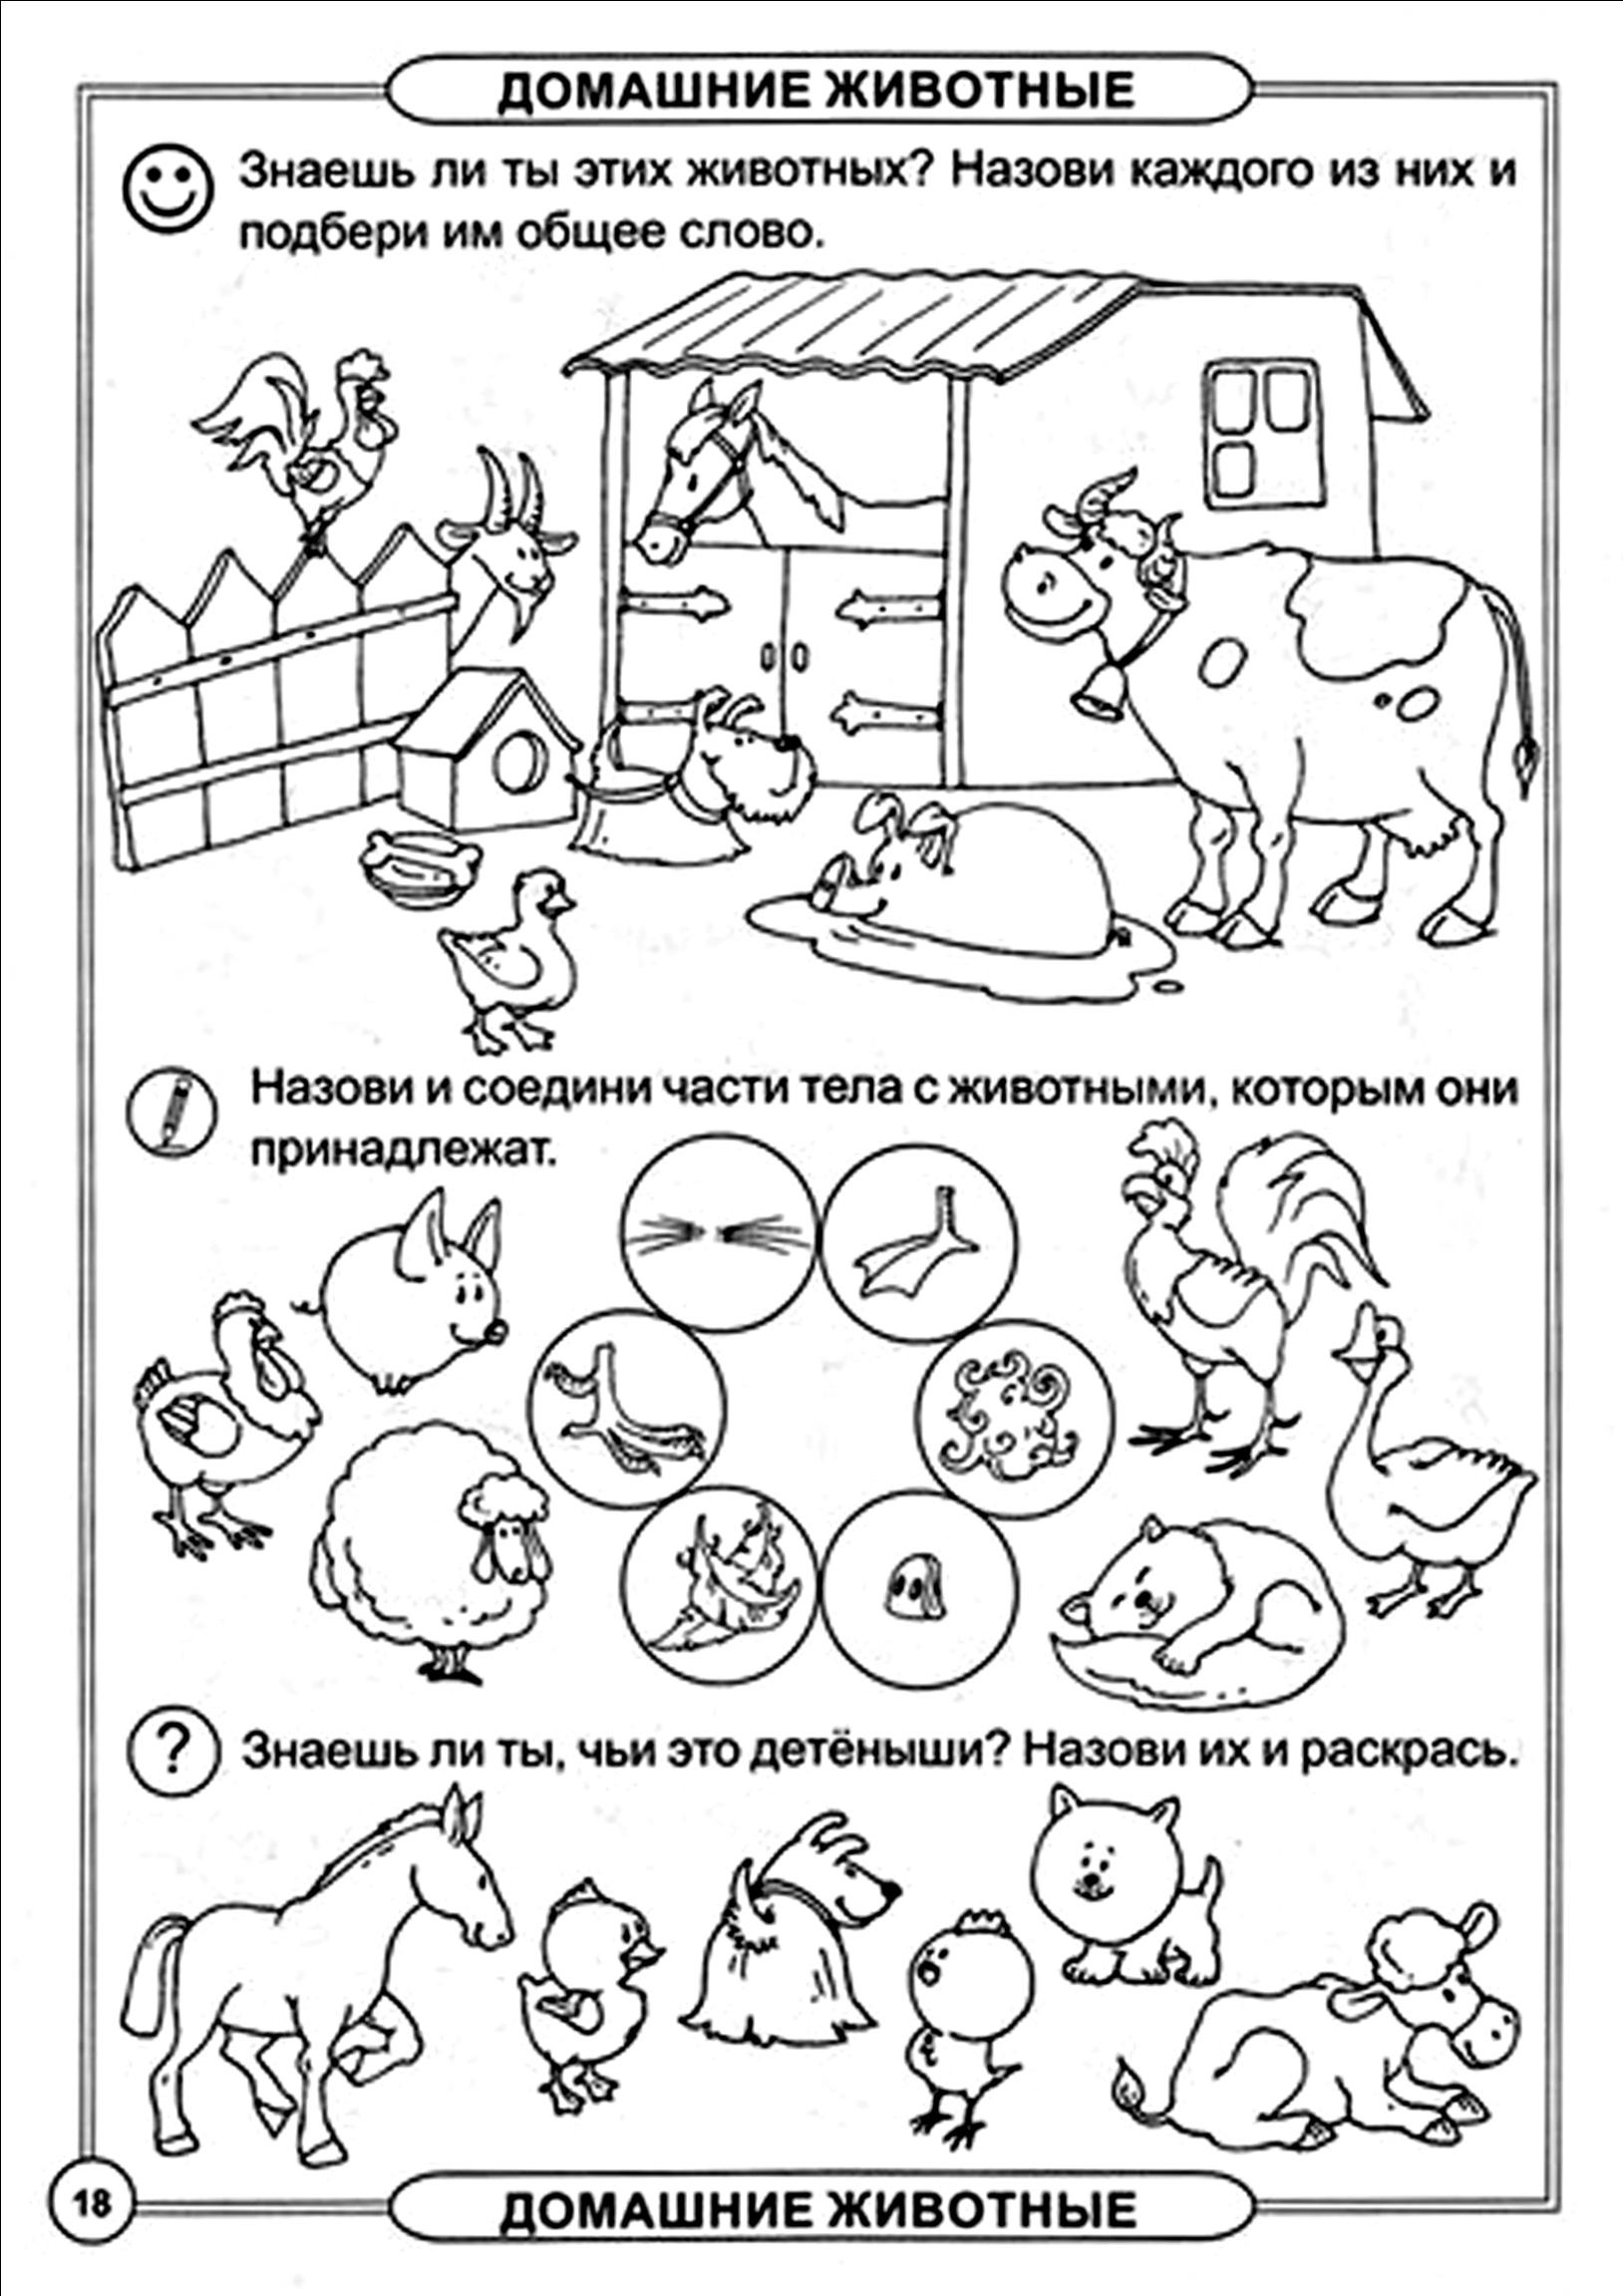 Домашние животные задания 3 4. Домашние животные задания для дошкольников 6-7 лет. Домашние животные задания для детей. Домашние животныехадания. Домашнее животные задания для дошкольников.